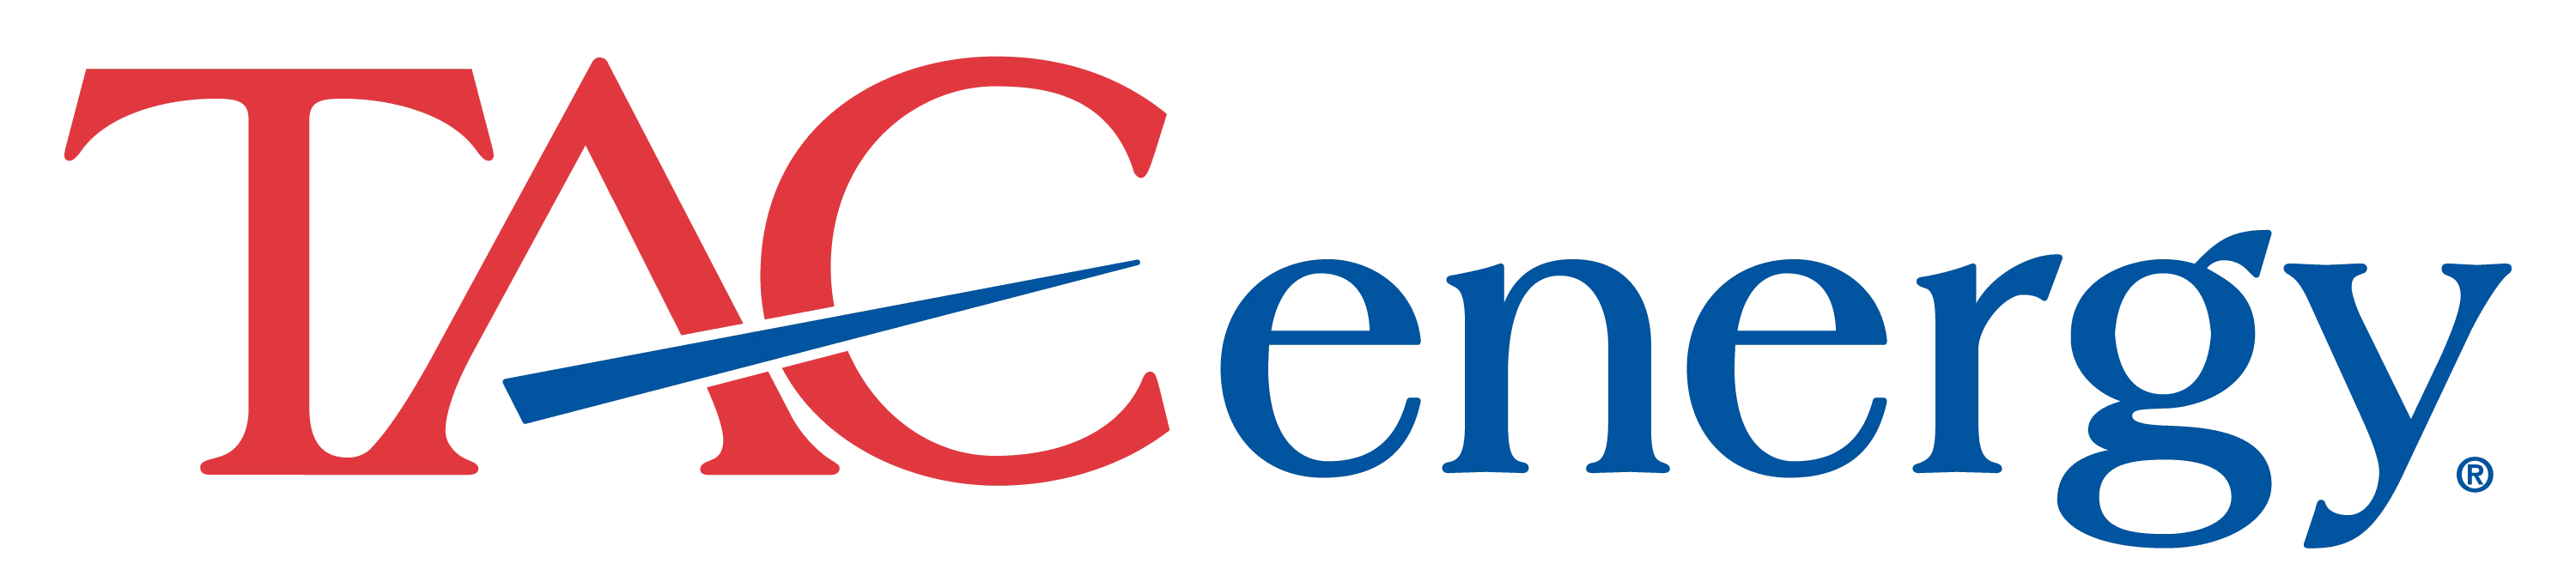 TACenergy logo